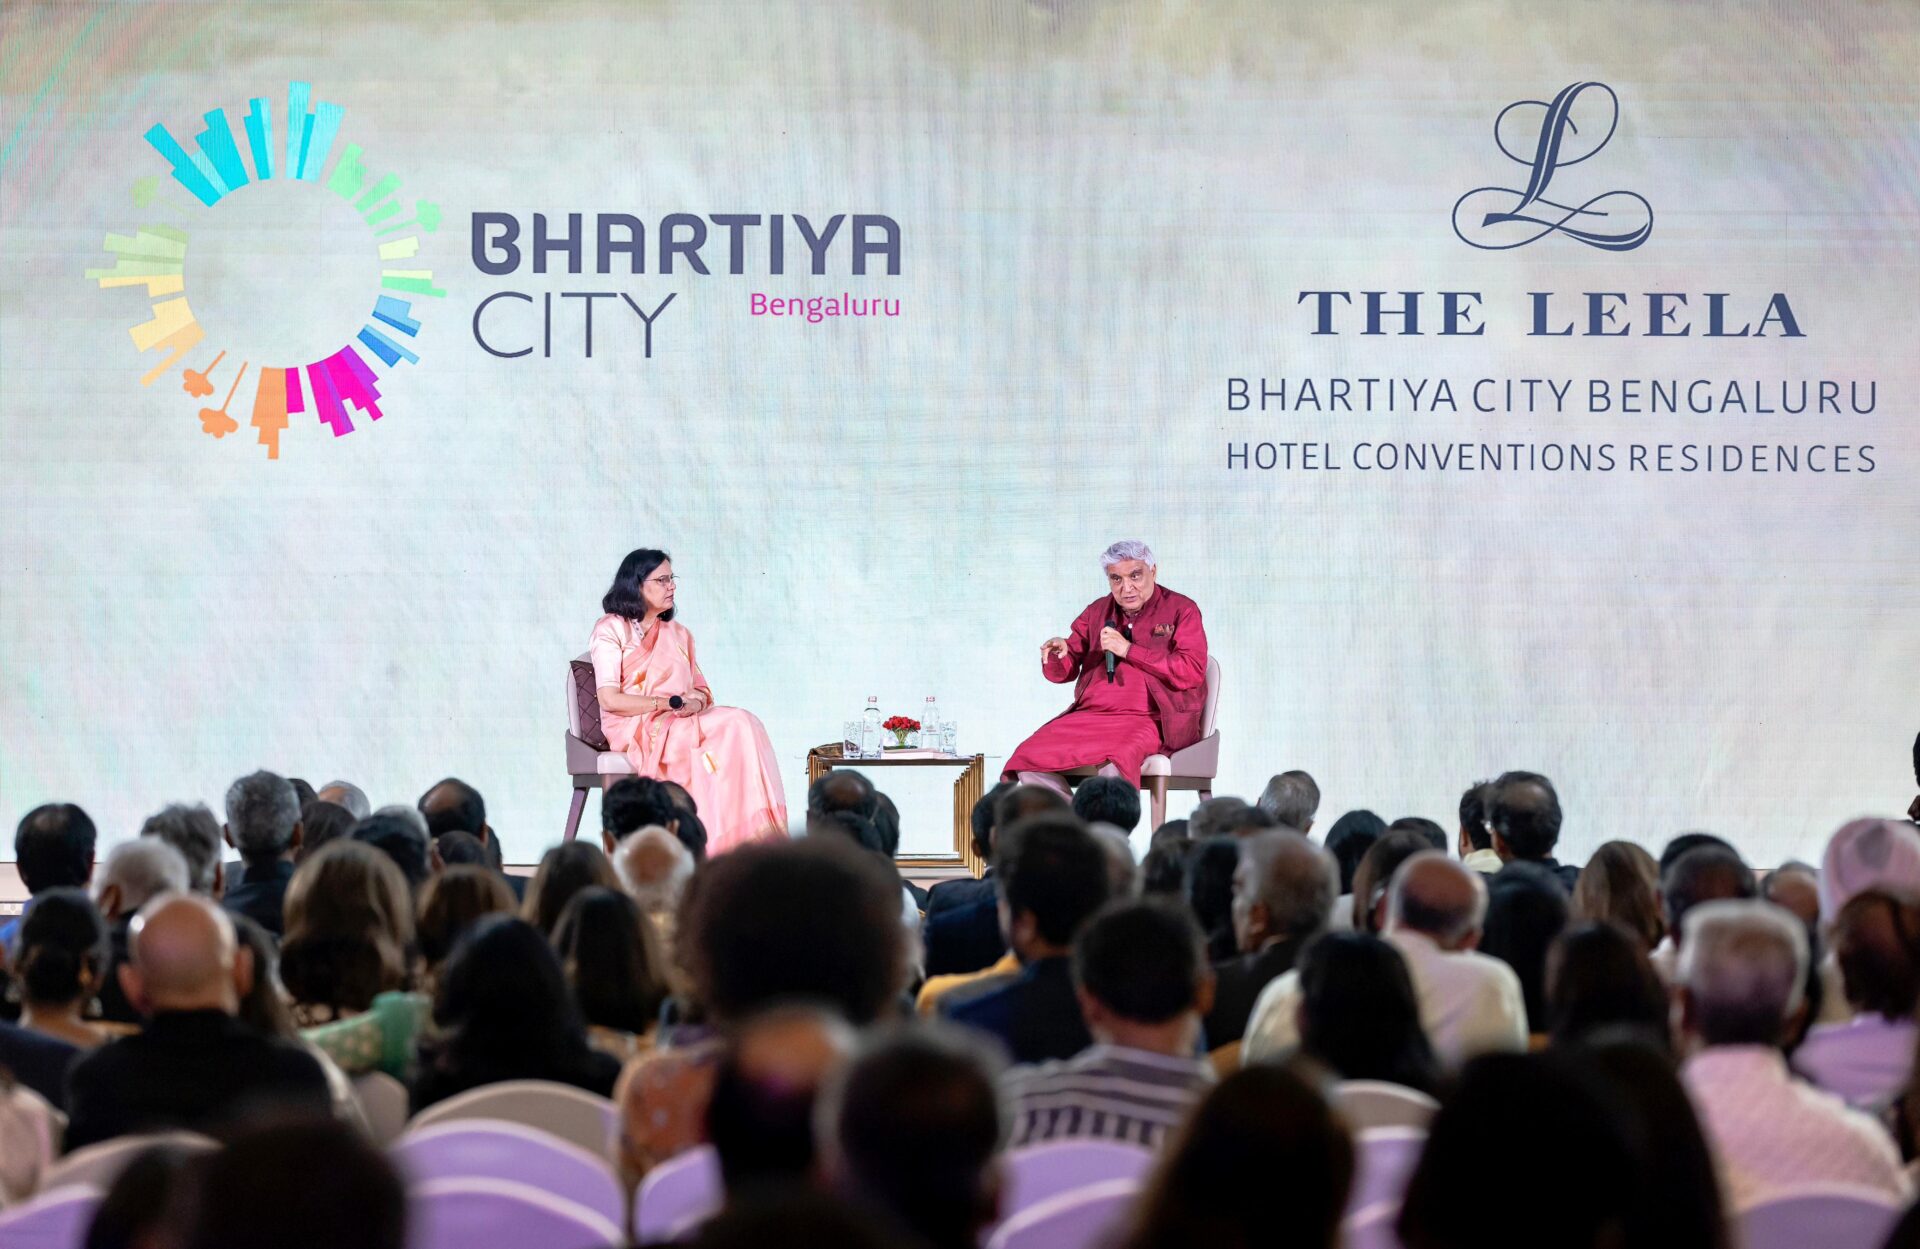 The Leela Bhartiya City Bengaluru Celebrates its two-year anniversary